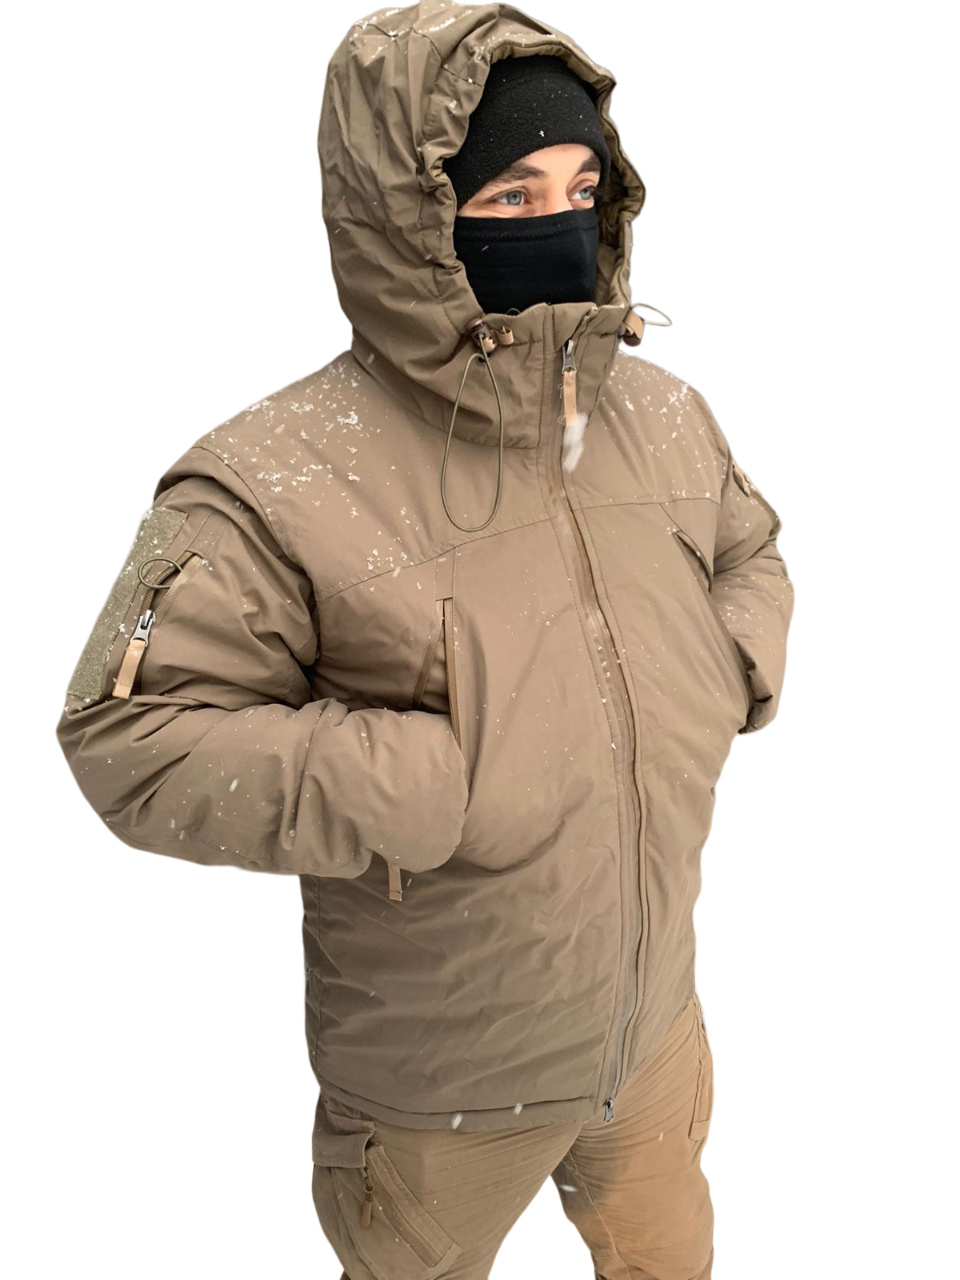 Зимняя куртка мужская Военсклад МСК carinthia бежевая L